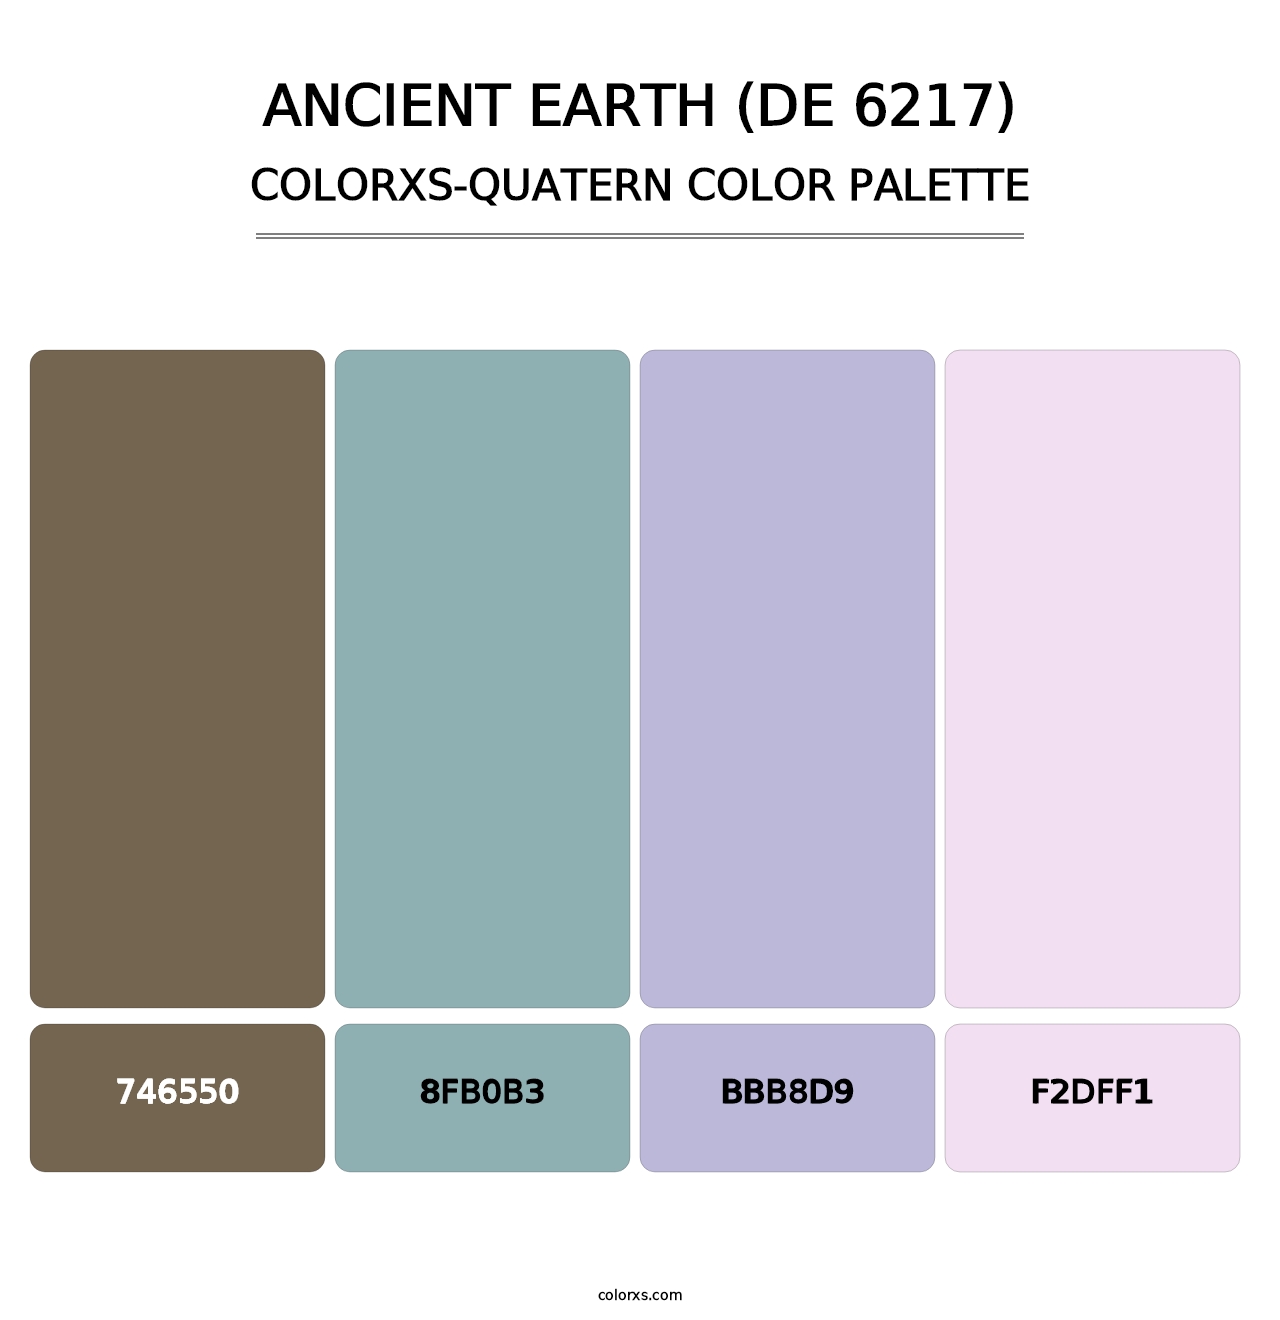 Ancient Earth (DE 6217) - Colorxs Quatern Palette